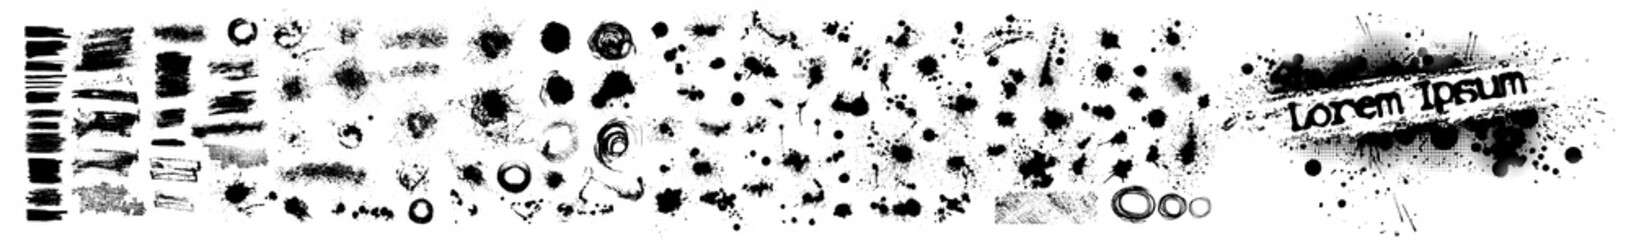 Een reeks zwarte vlekken van verf. vector illustratie